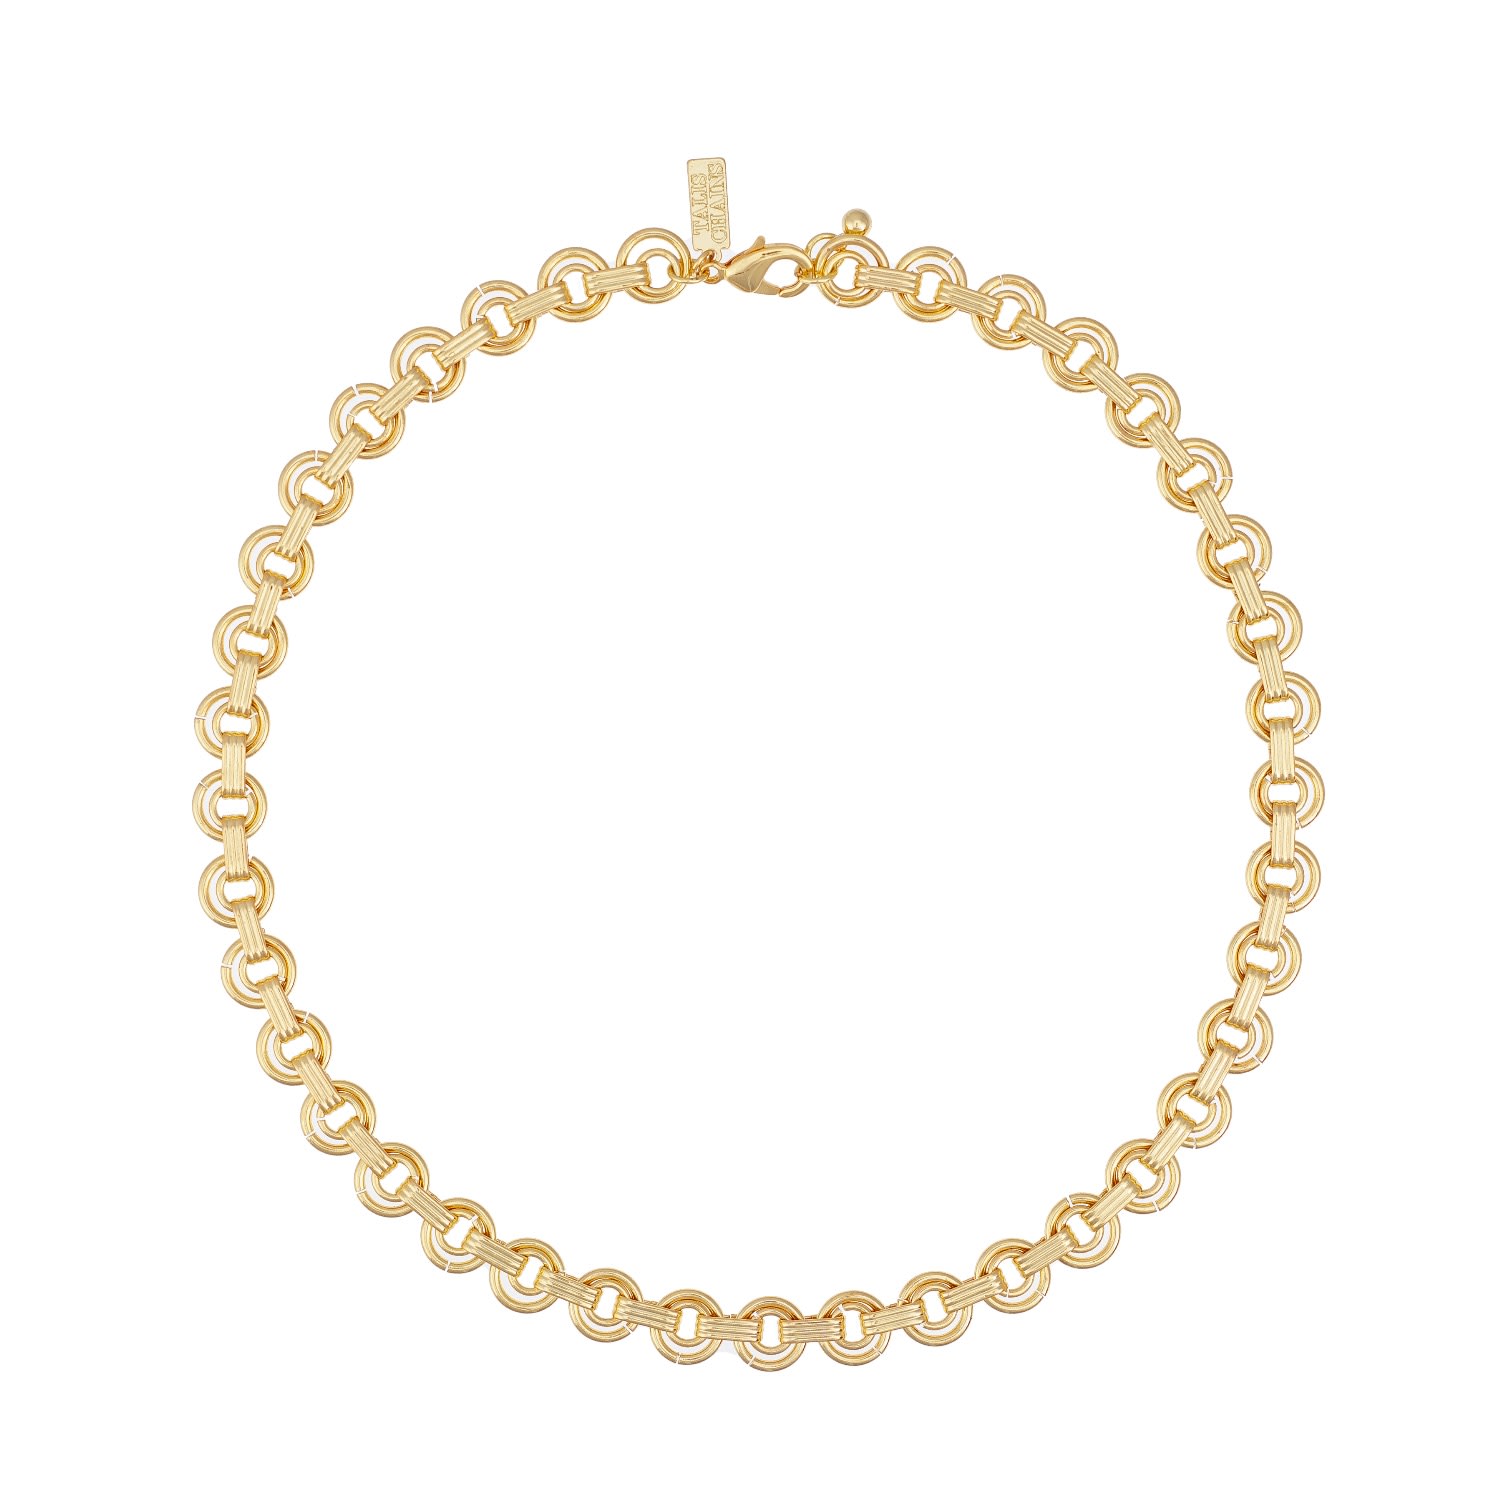 Shop Talis Chains Women's Gold Stockholm Chain Necklace